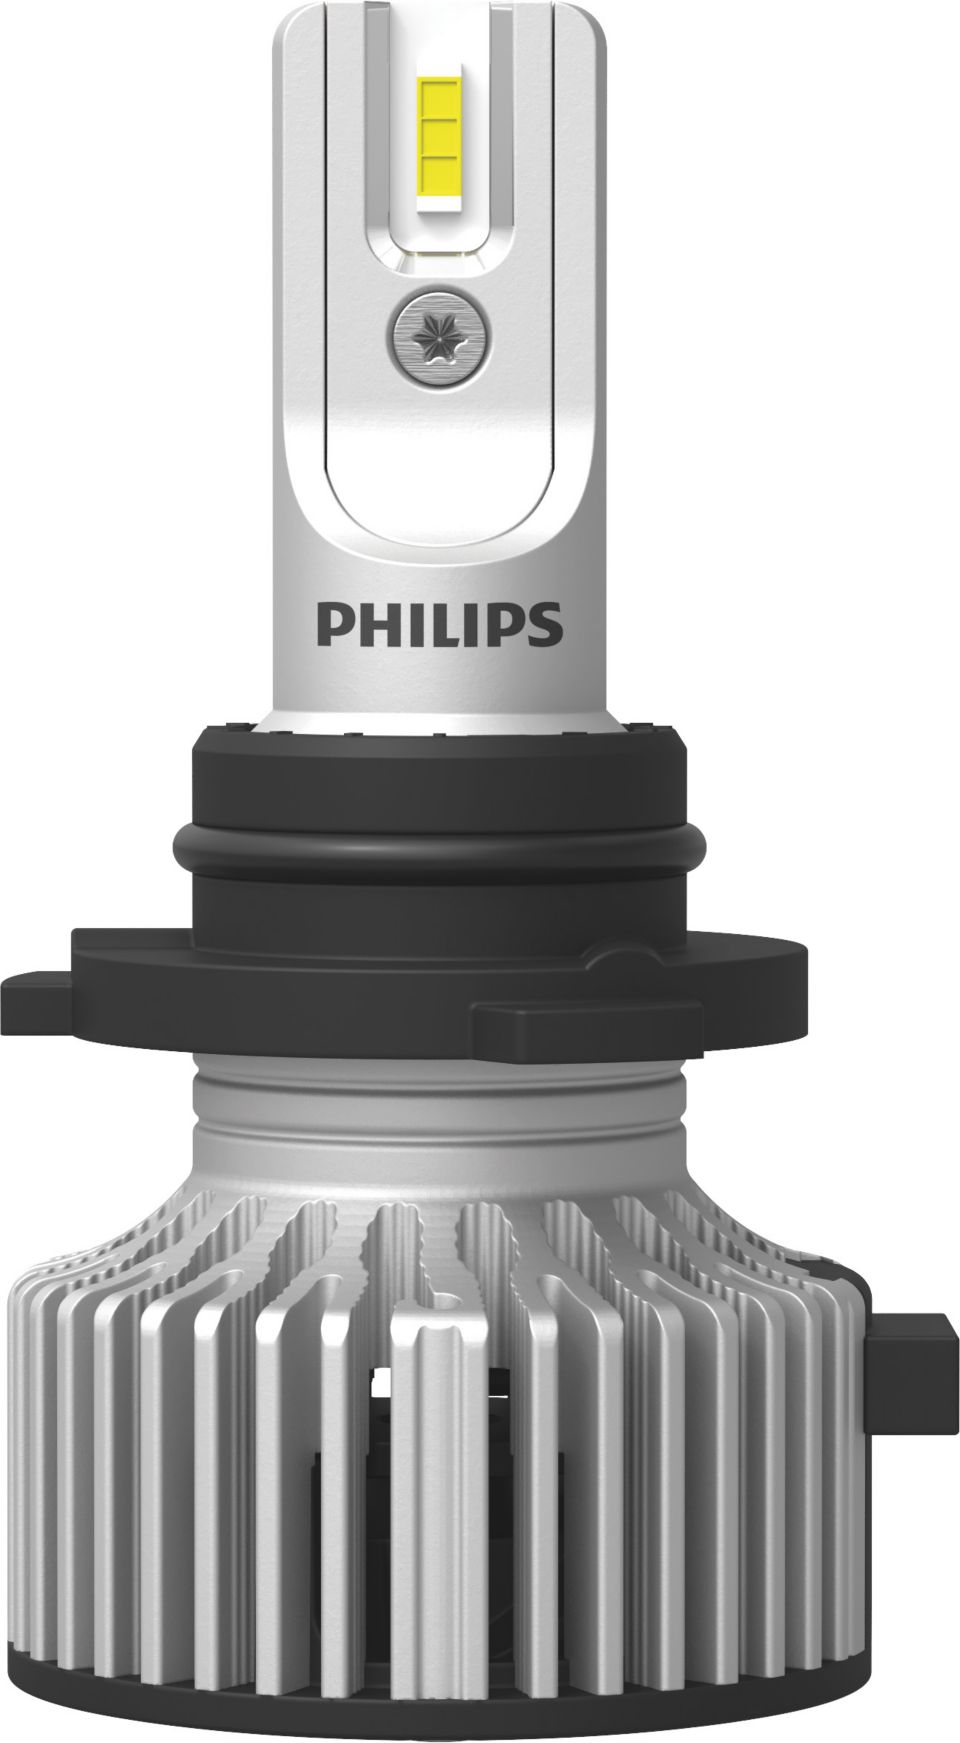 2x lámparas de led H1 PHILIPS Ultinon Pro3021 6000K